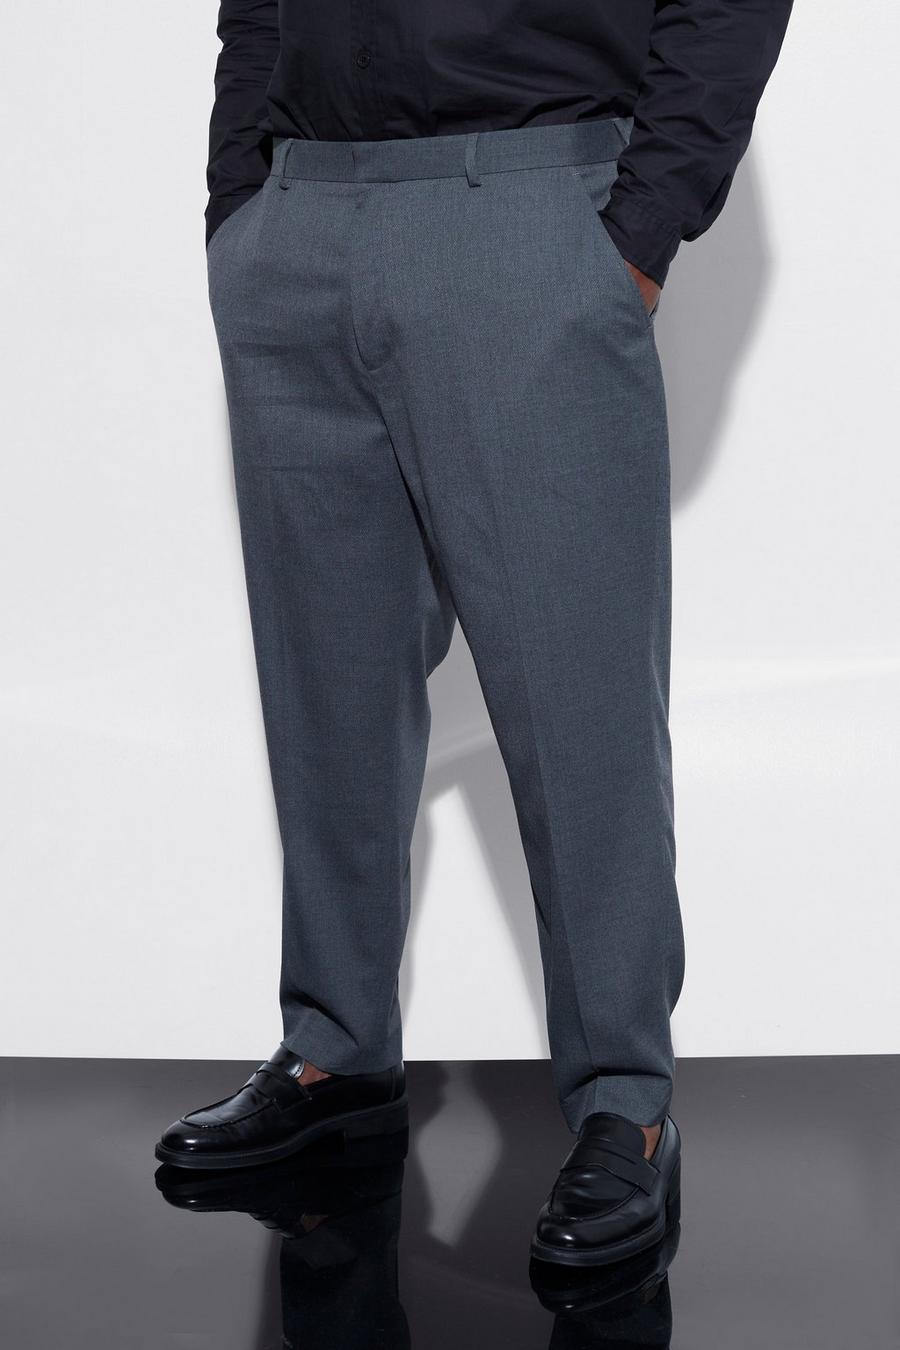 Pantalón Plus elegante estrecho, Grey grigio